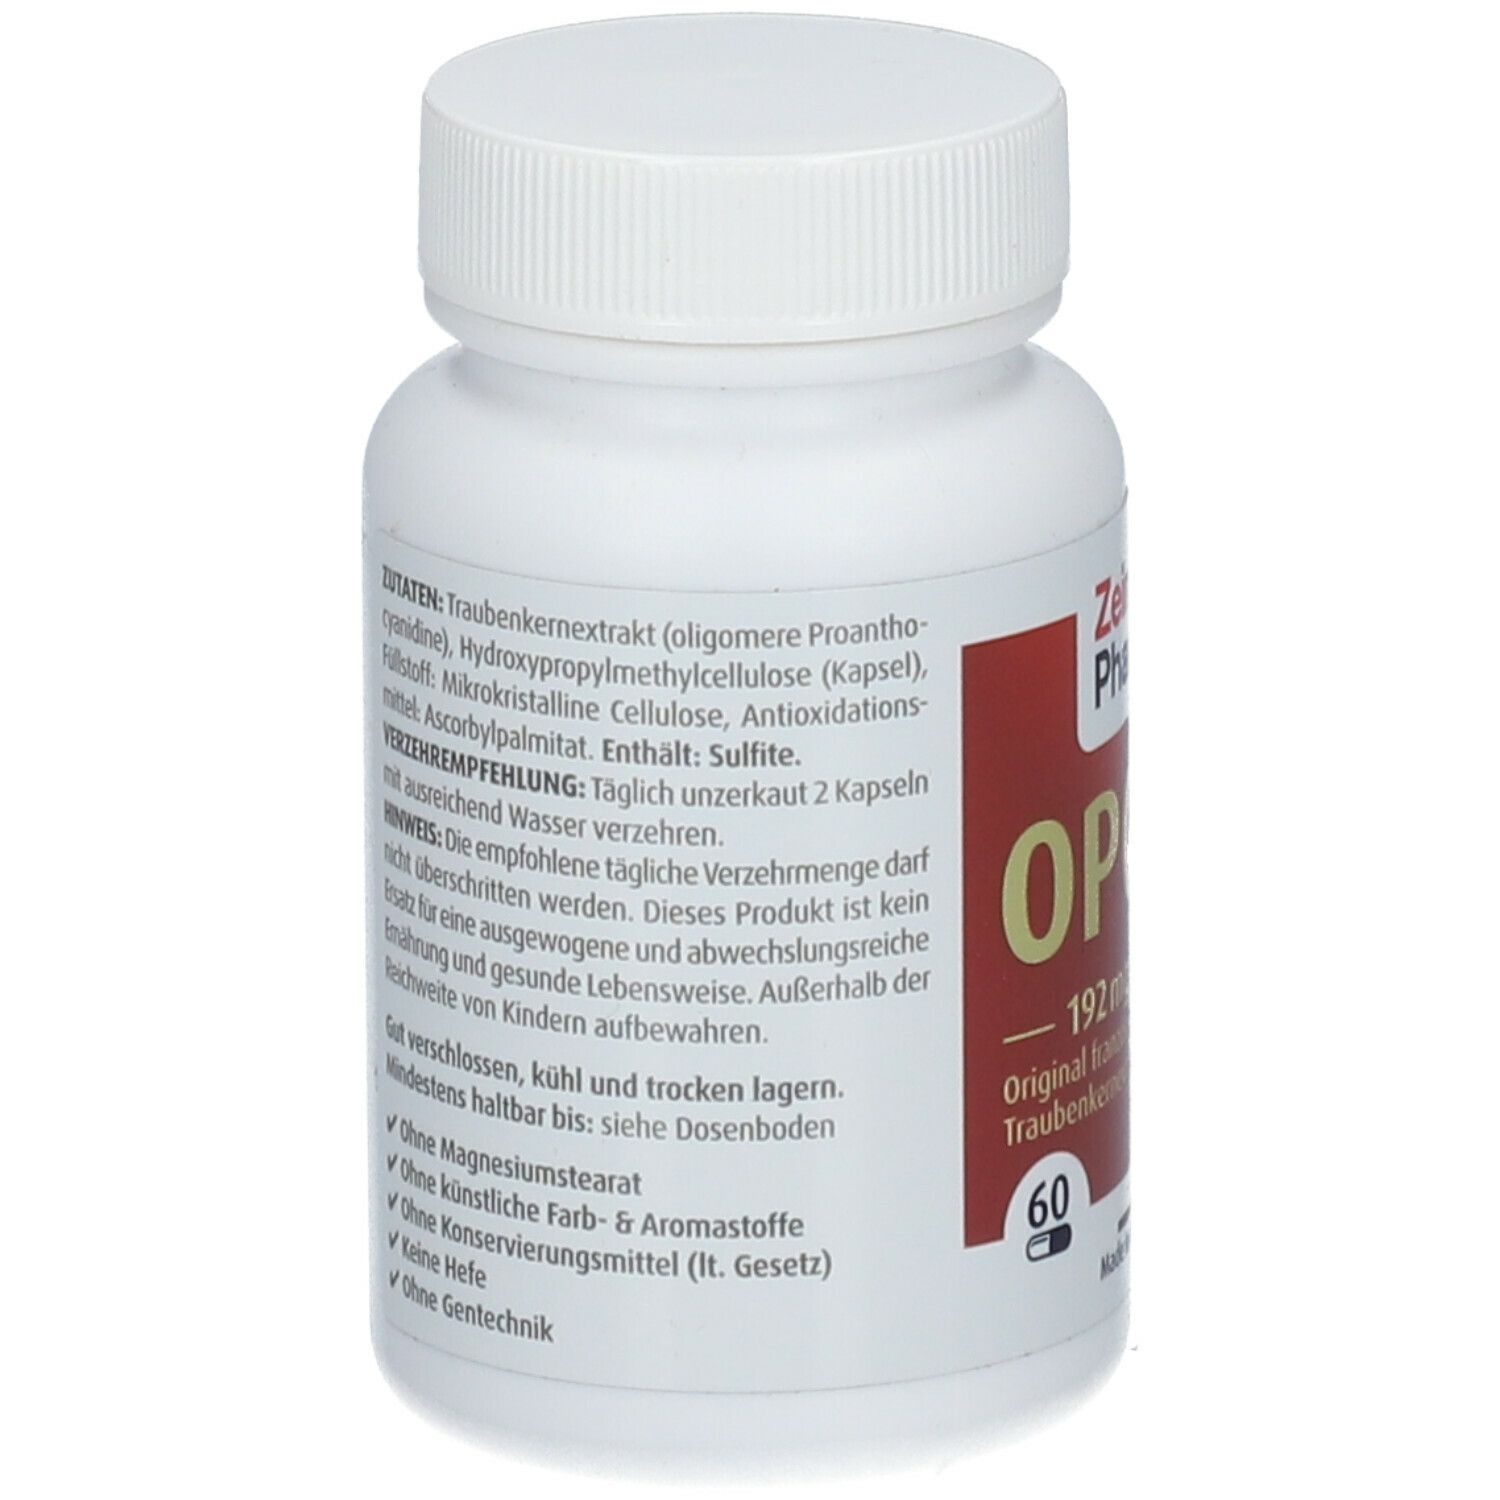 ZeinPharma® OPC Kapseln nativ 192 mg